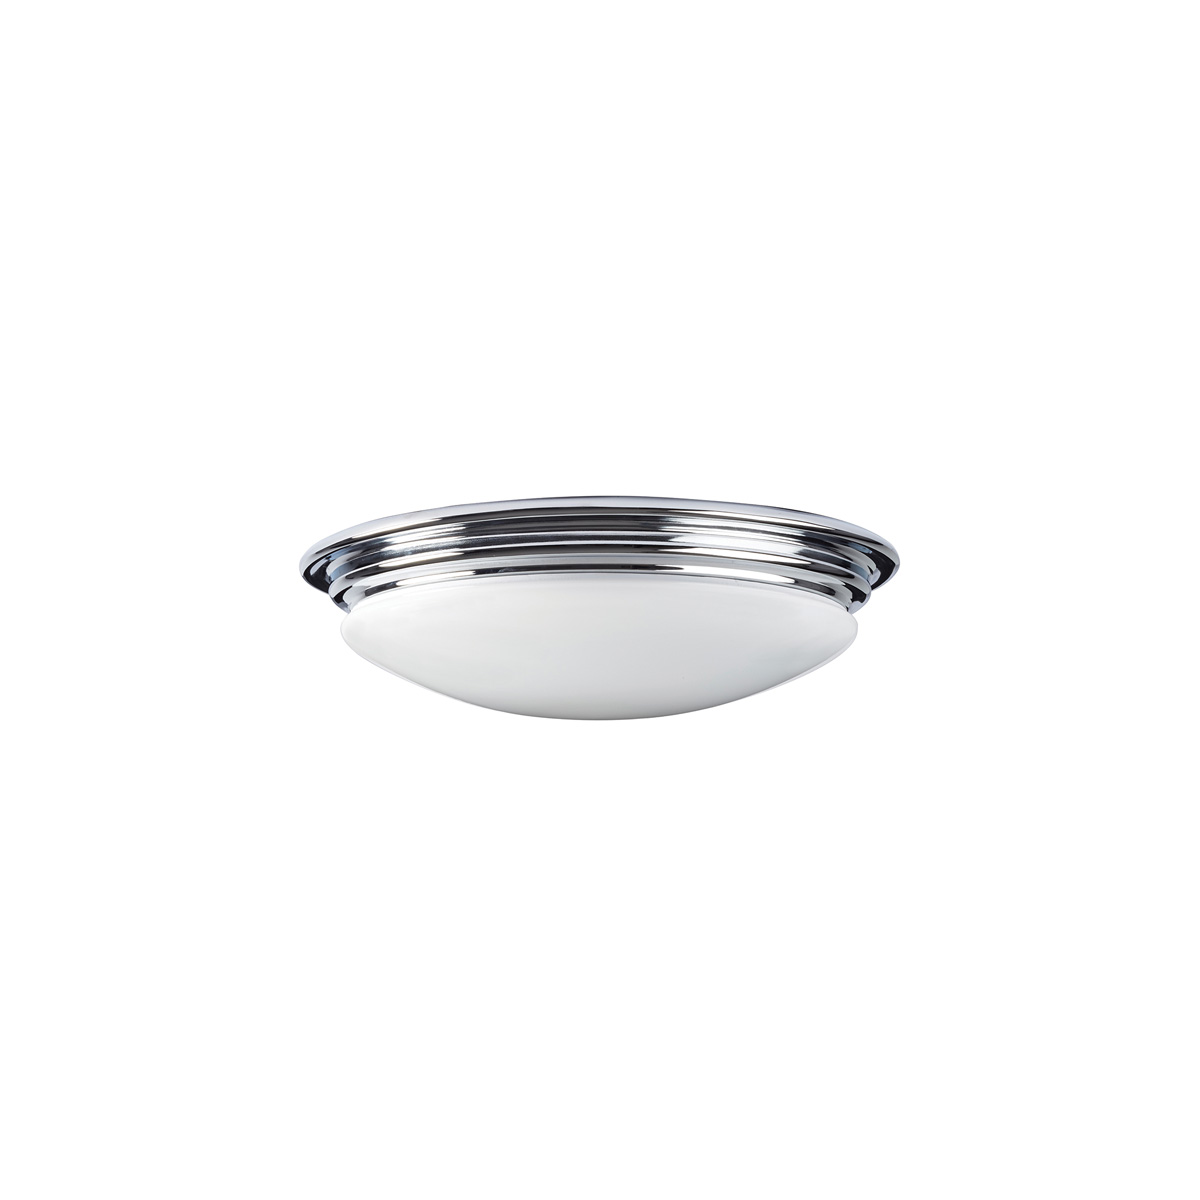 Потолочный светильник для ванных комнат BATH-BROMPTON-F, Потолочные светильники для ванных комнат Классический | Хром полированный | Ванная комната.